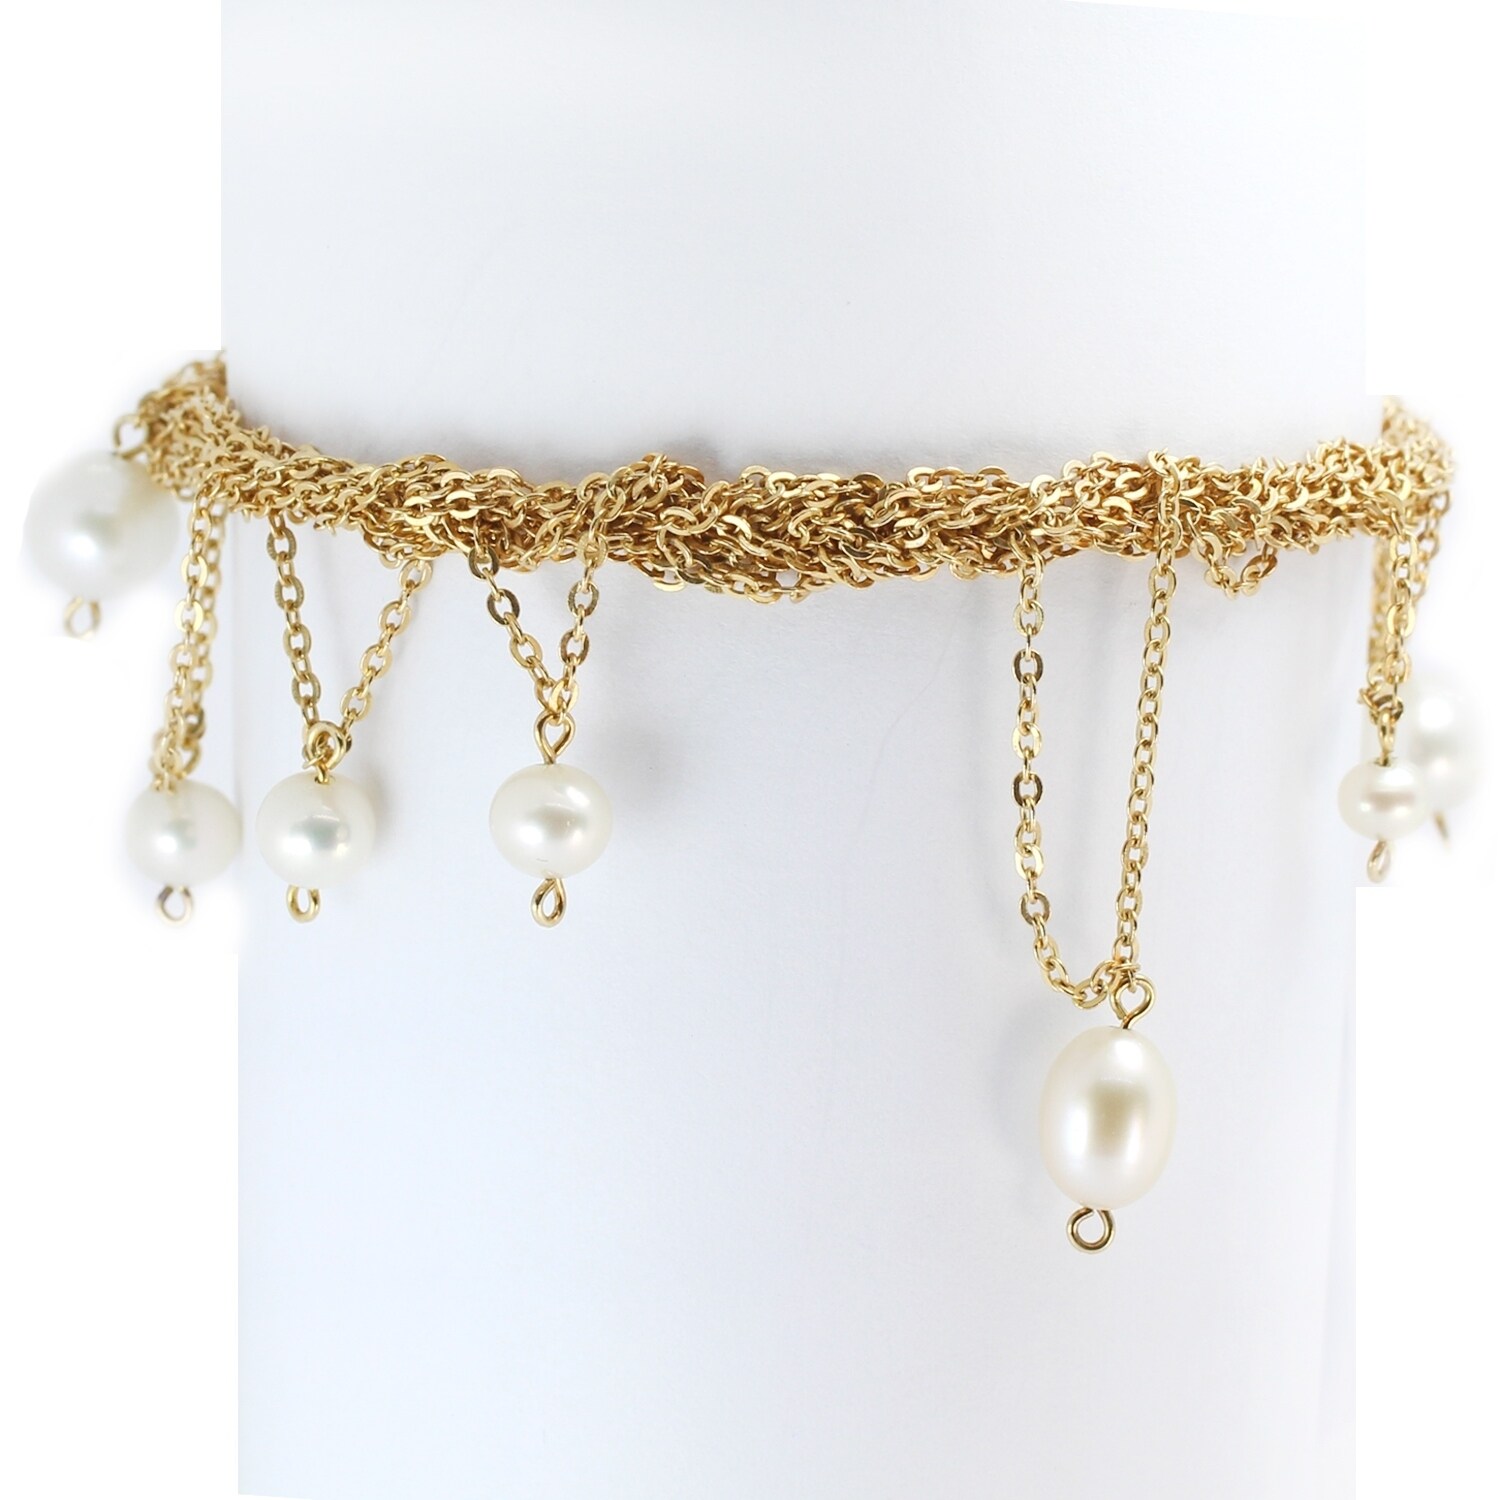 multi strand freshwater pearl bracelet